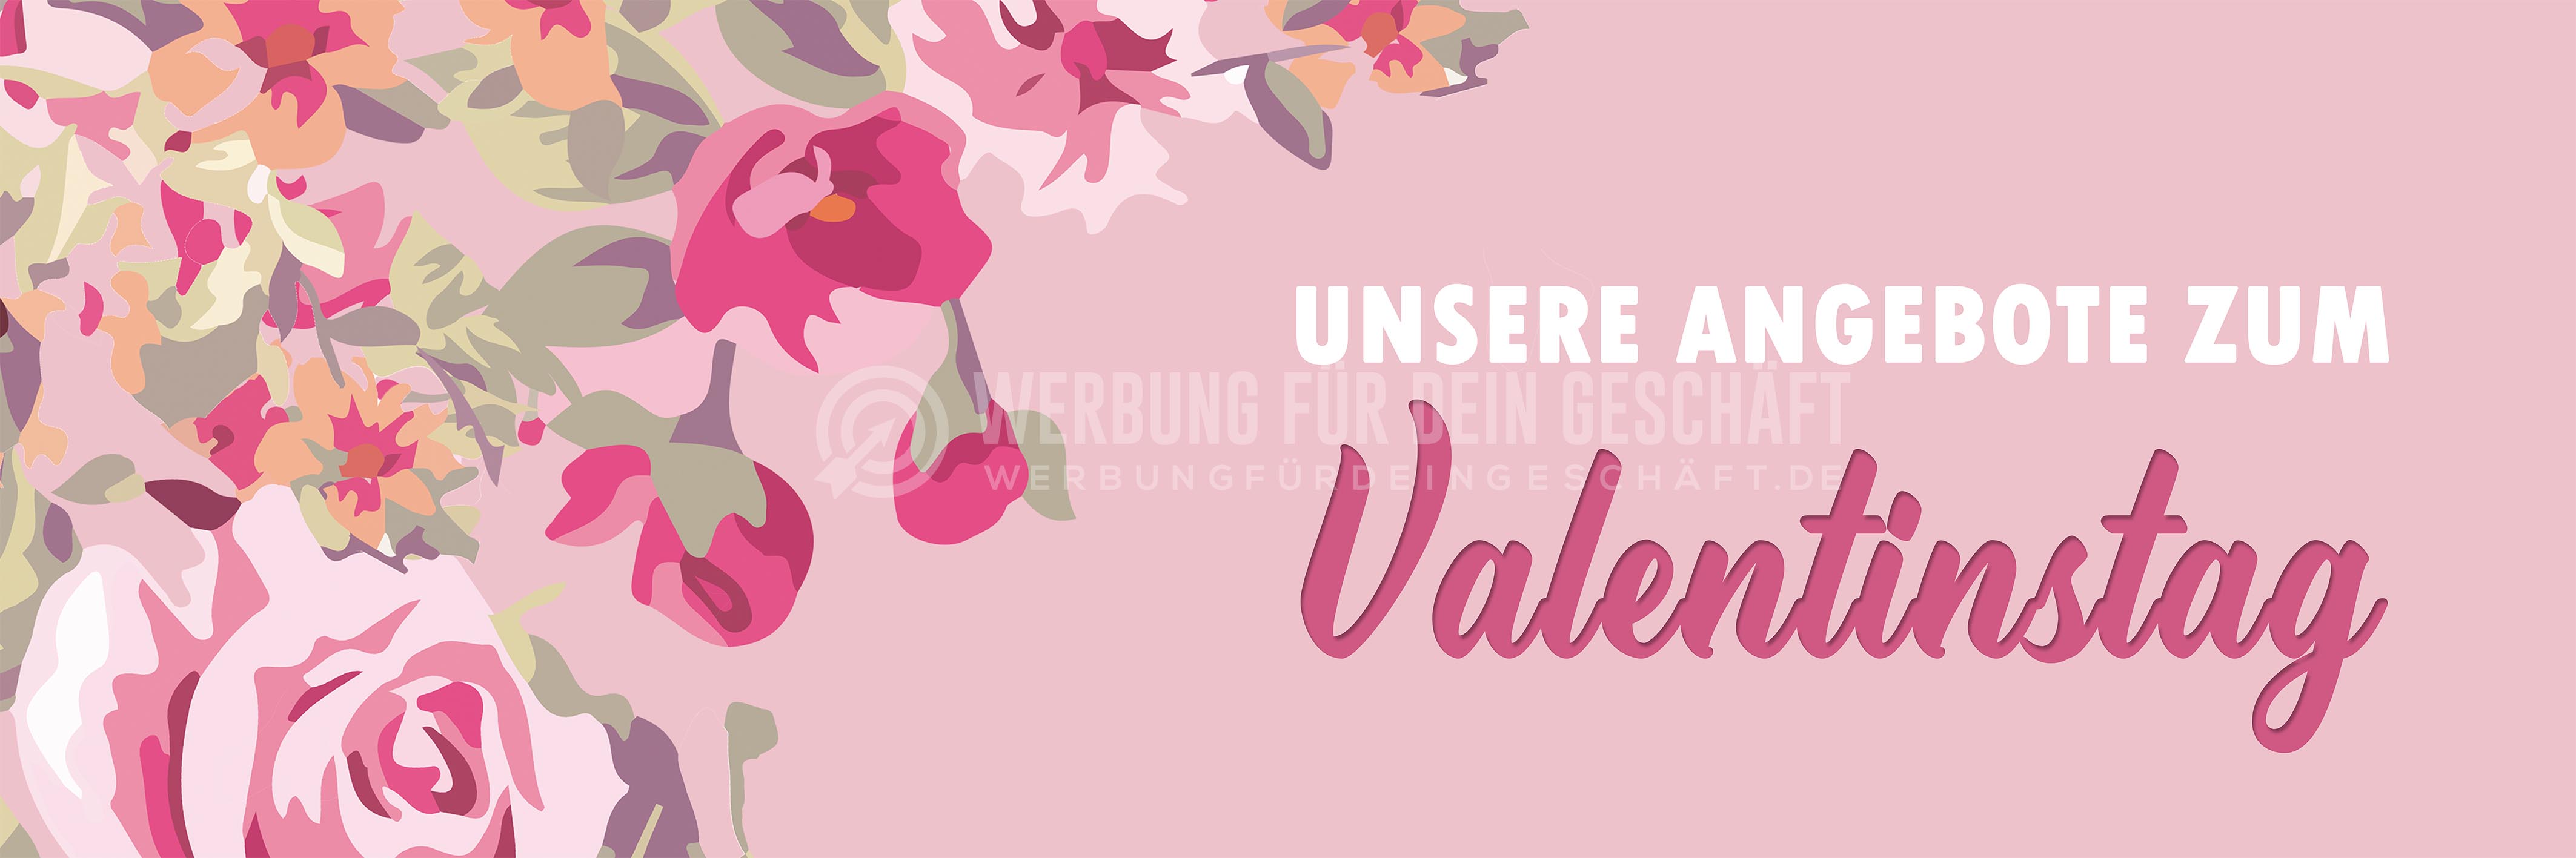 3:1 | Angebote zum Valentinstag Poster | Werbetafel zum Valentinstag | 3 zu 1 Format